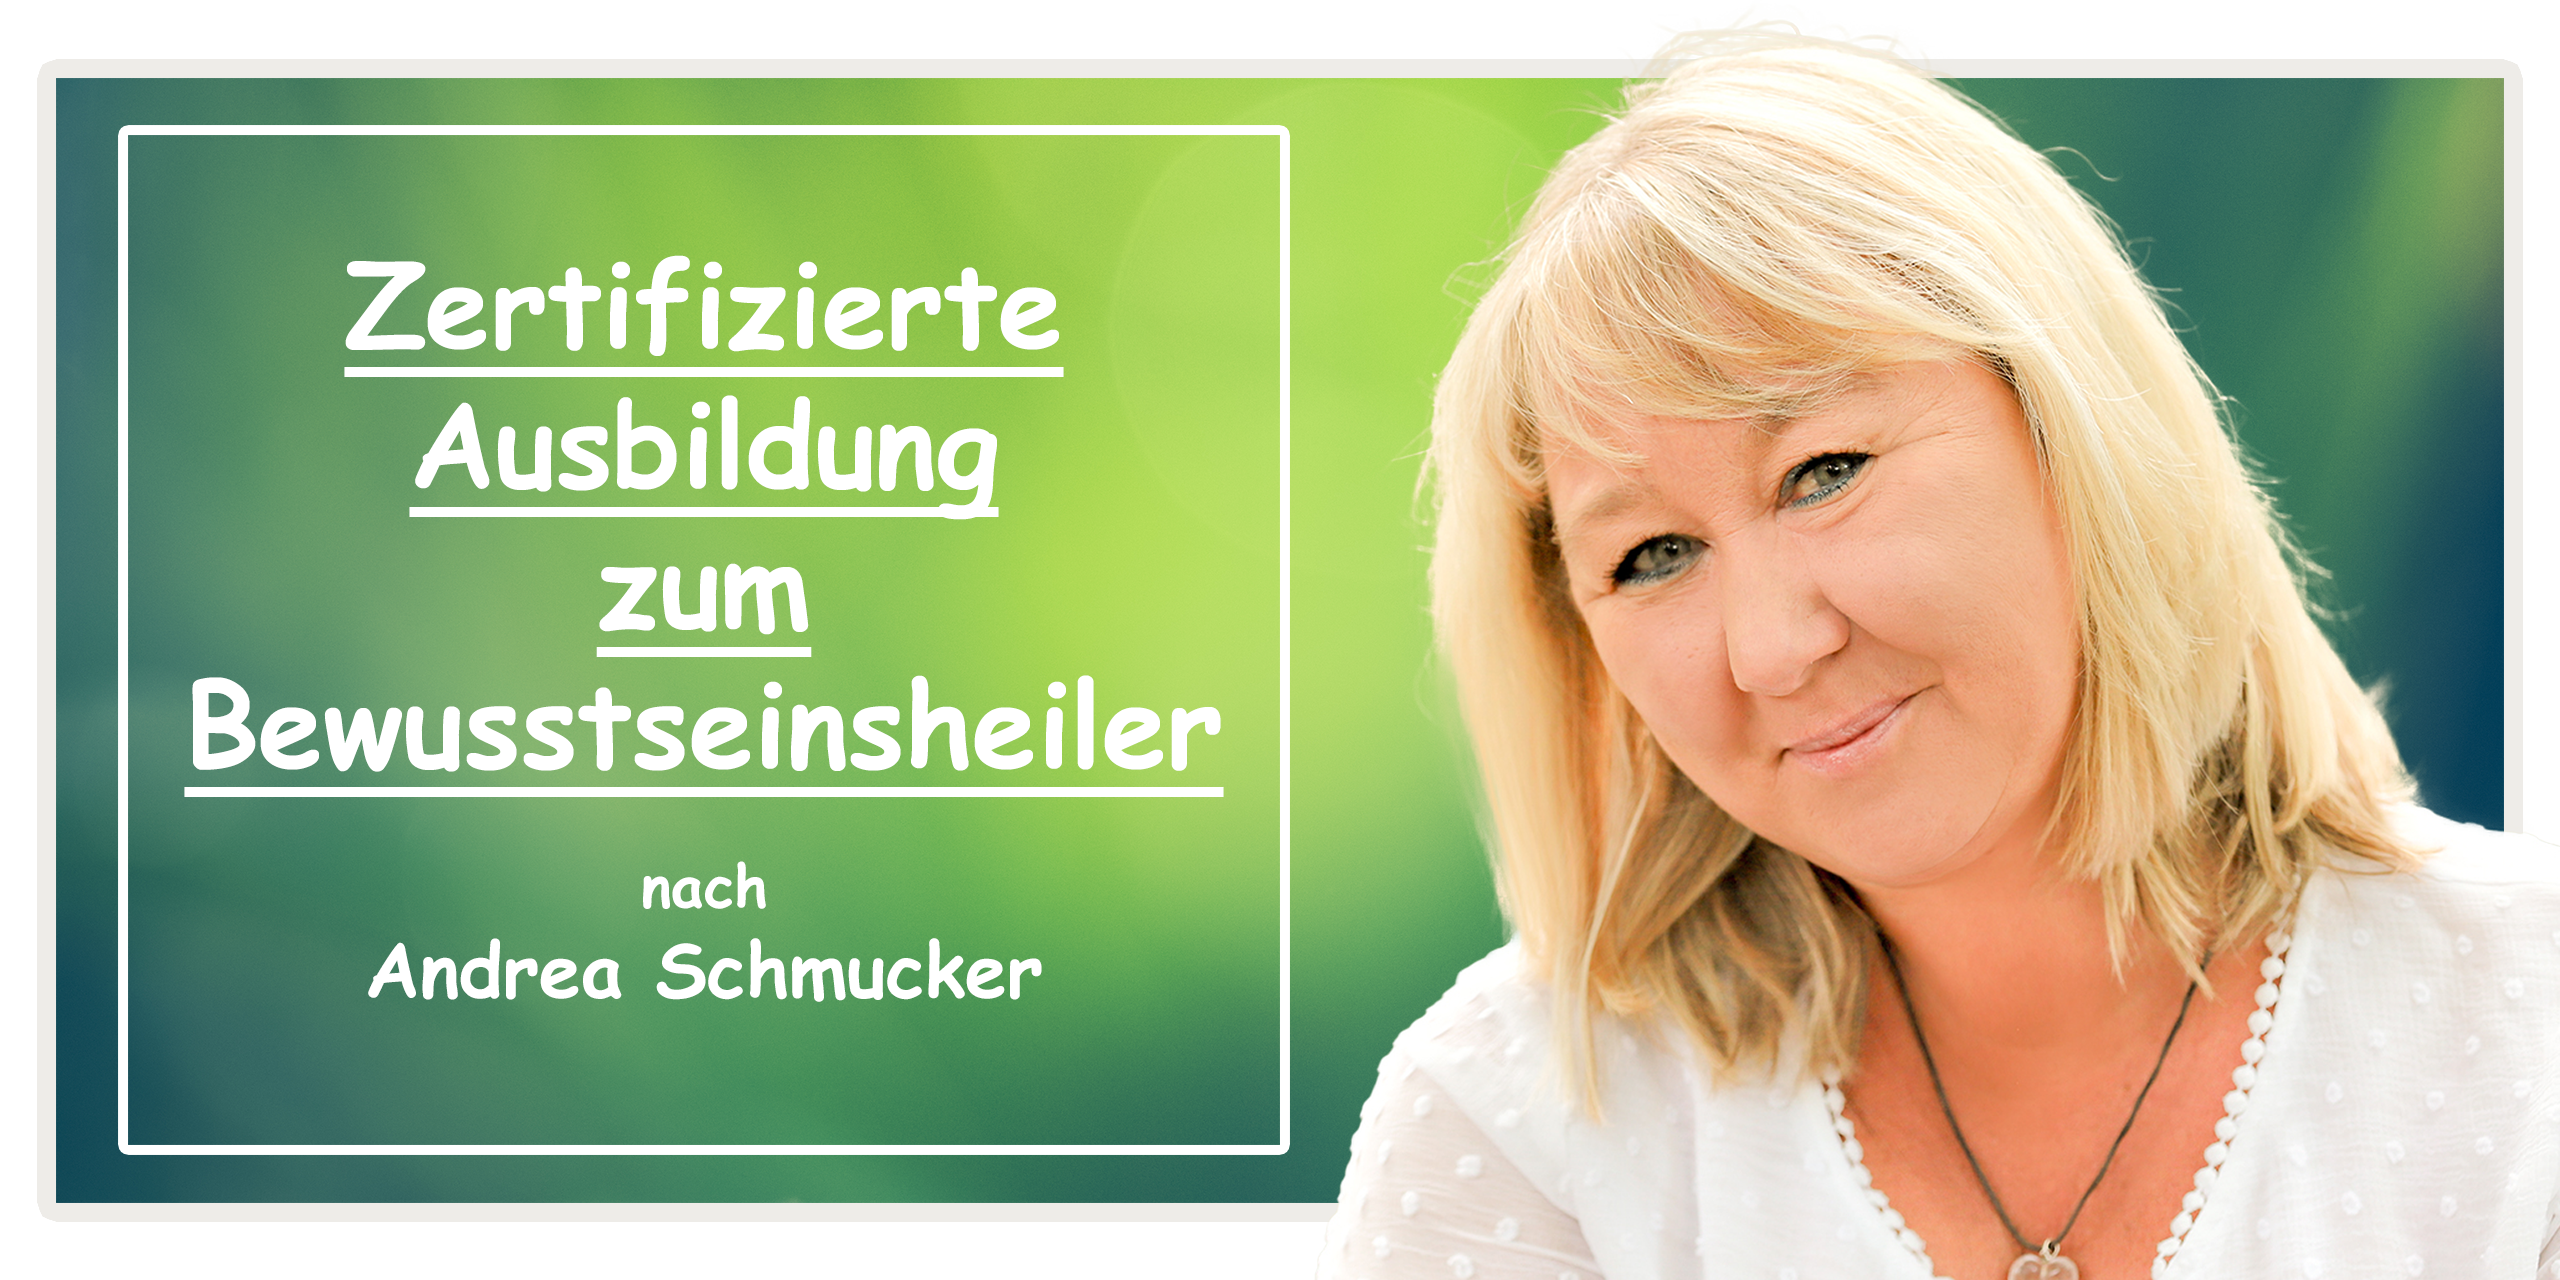 Zertifizierte Ausbildung zum Bewusstseinsheiler nach Andrea Schmucker